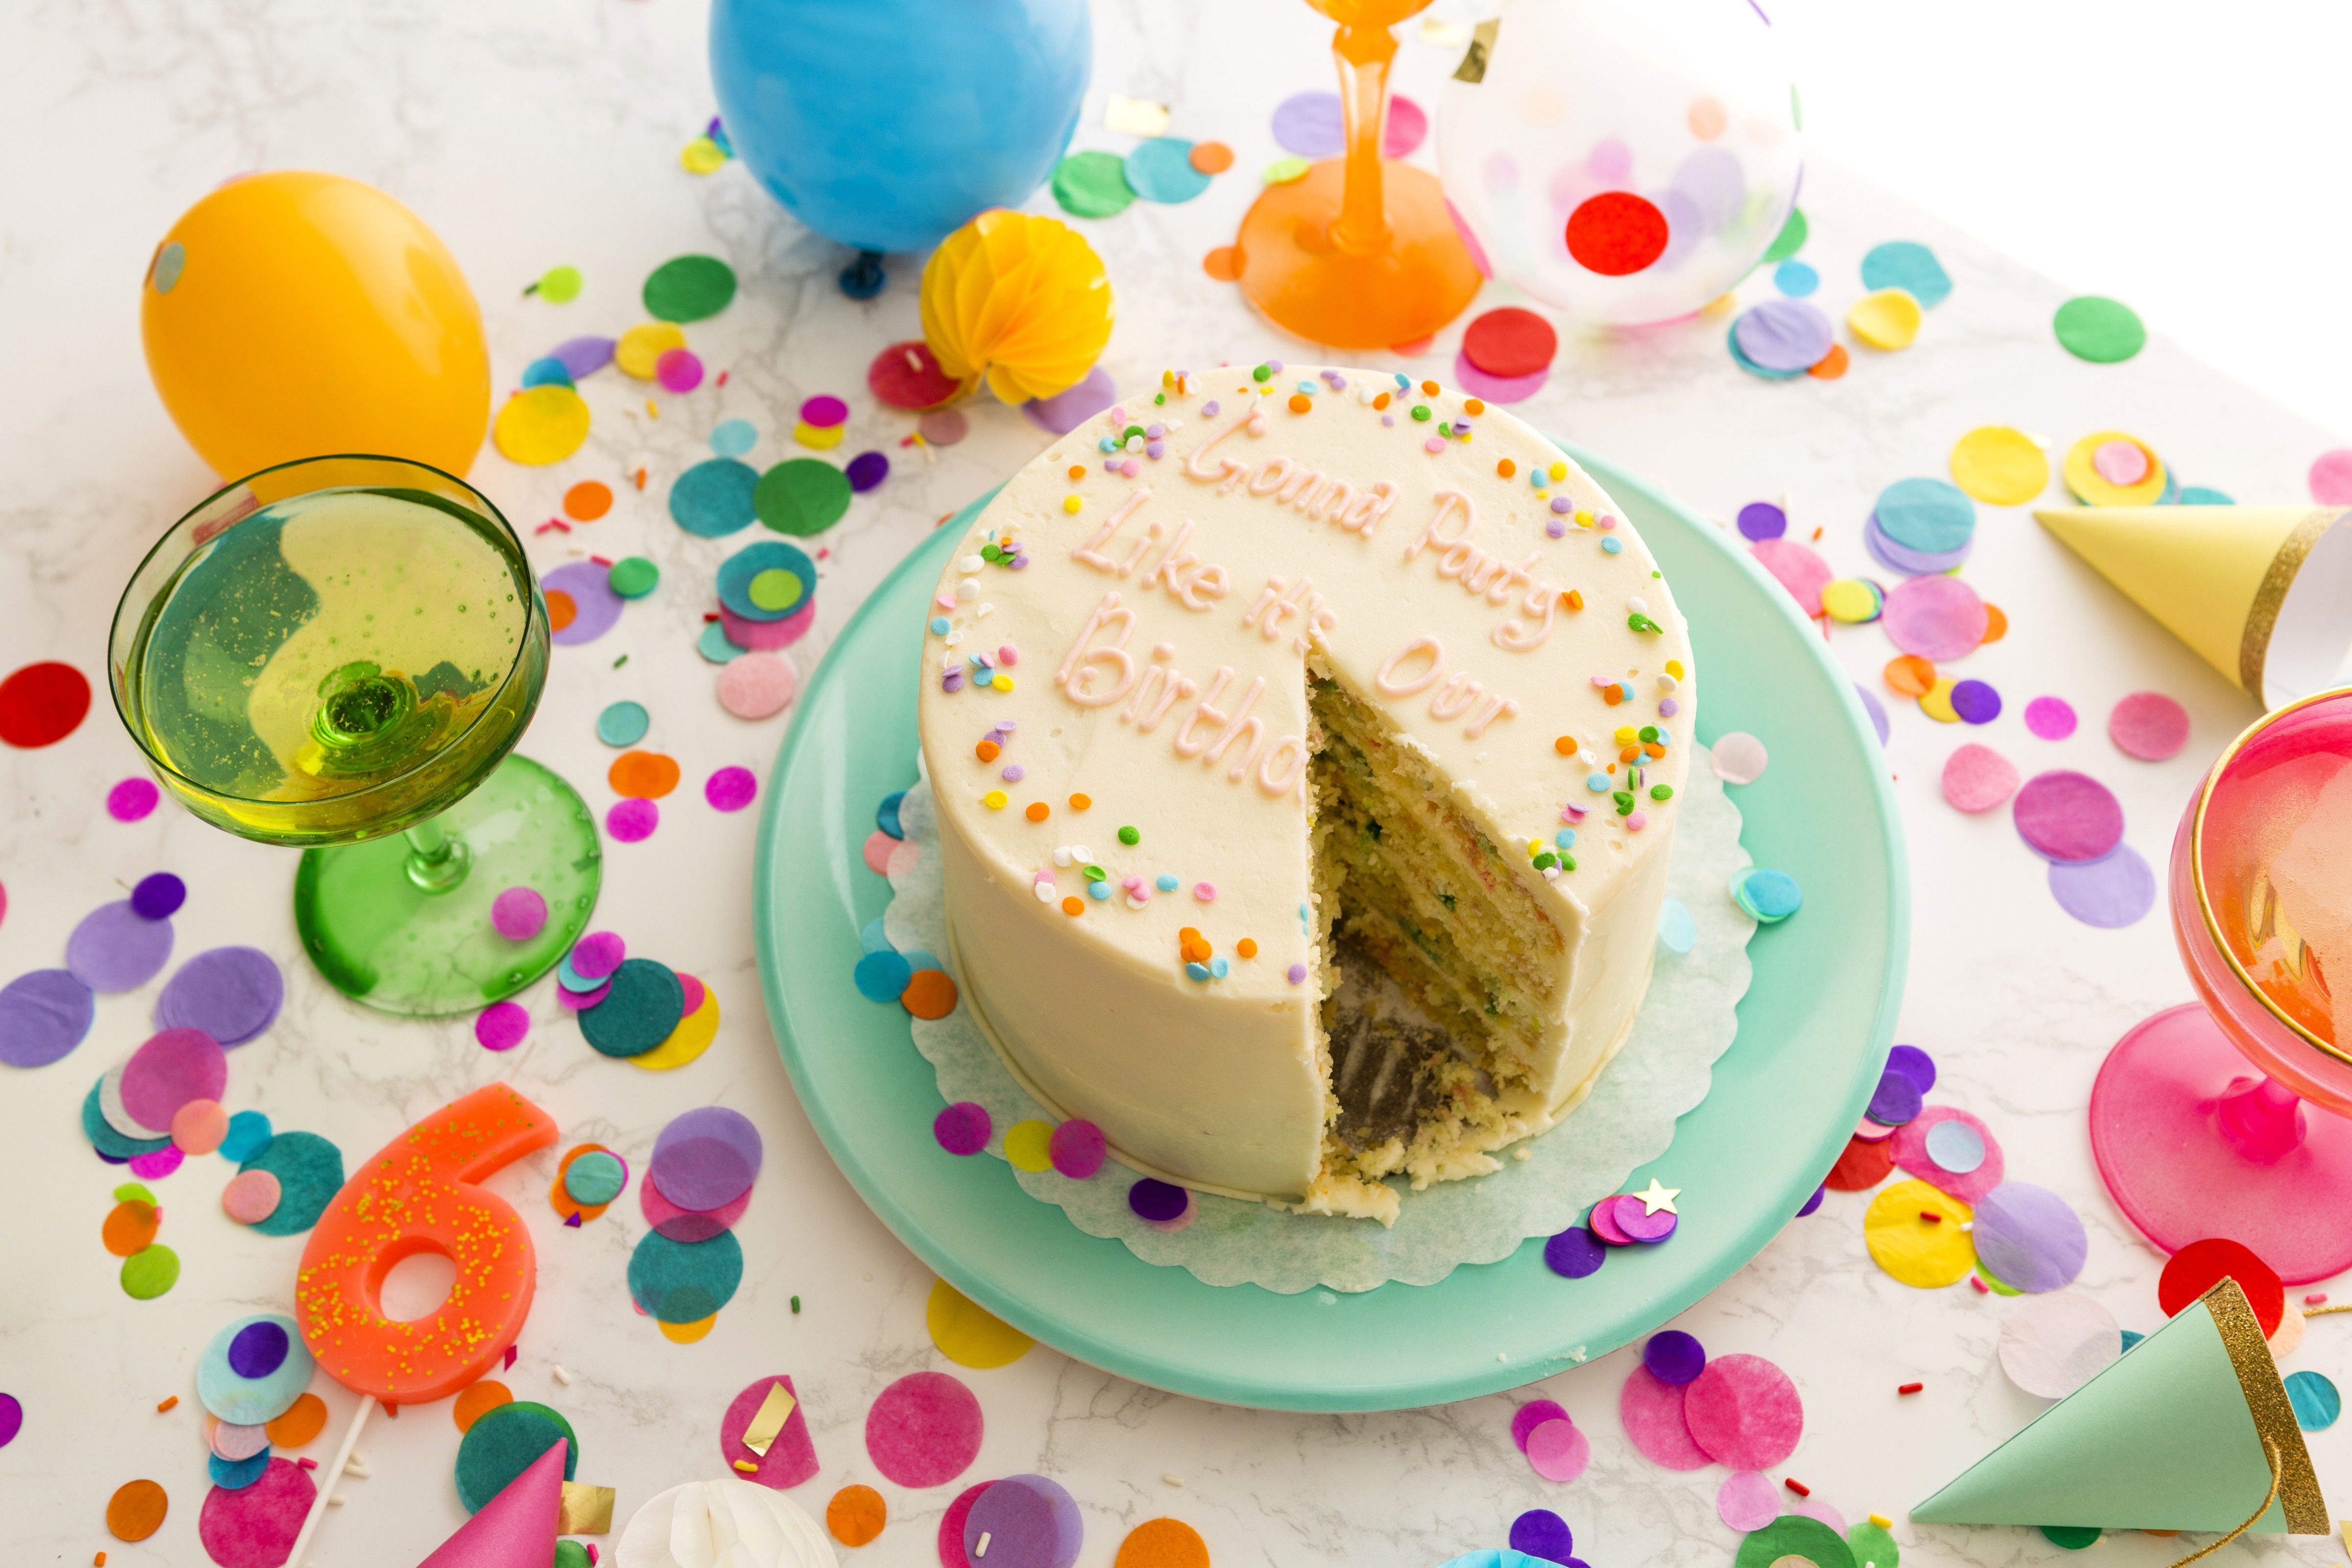 Easy Cake Decorating Ideas For Easter | Handmade Charlotte